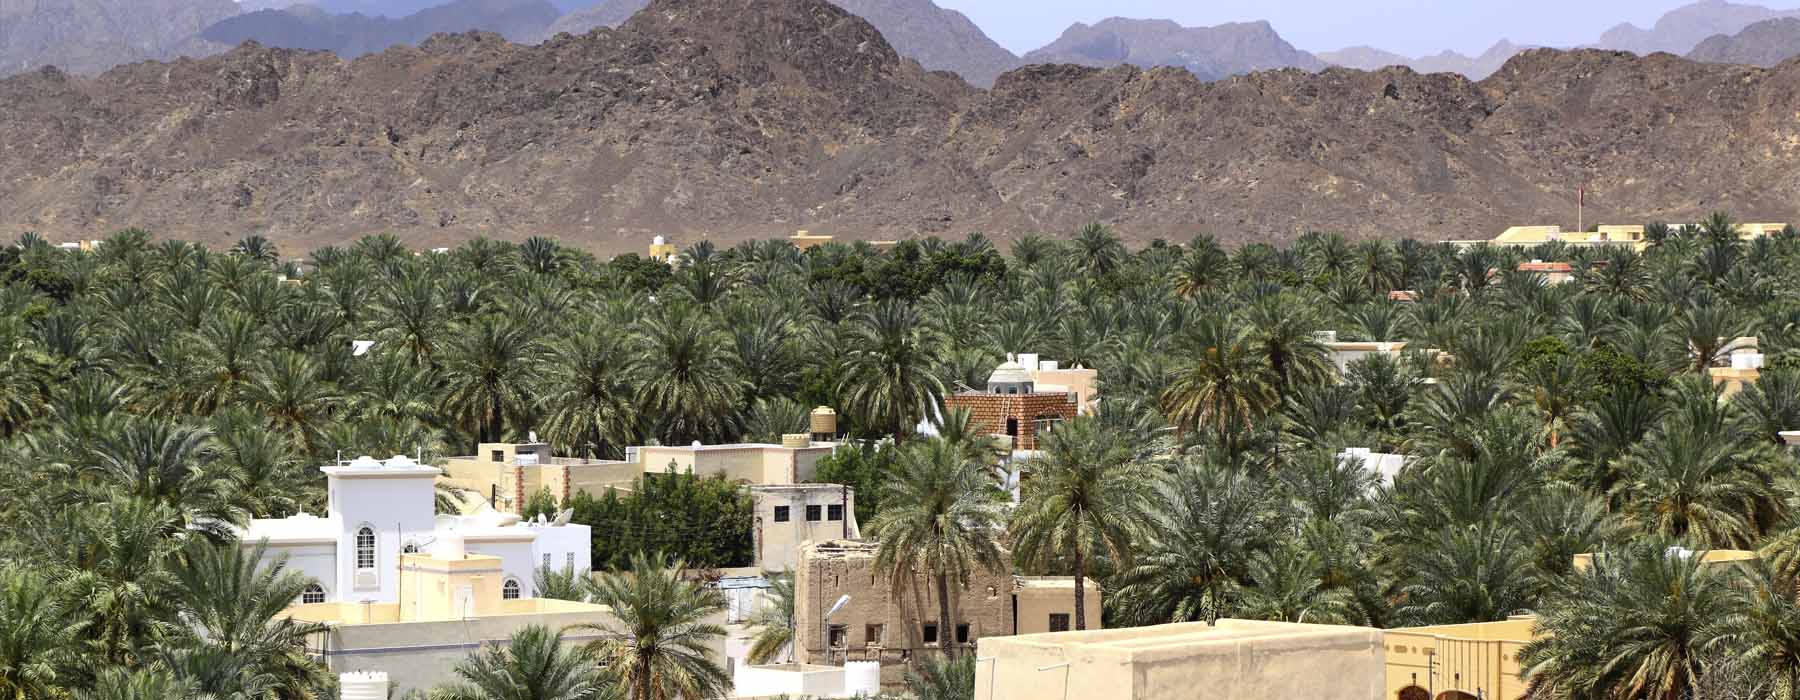 Oman<br class="hidden-md hidden-lg" /> October Holidays